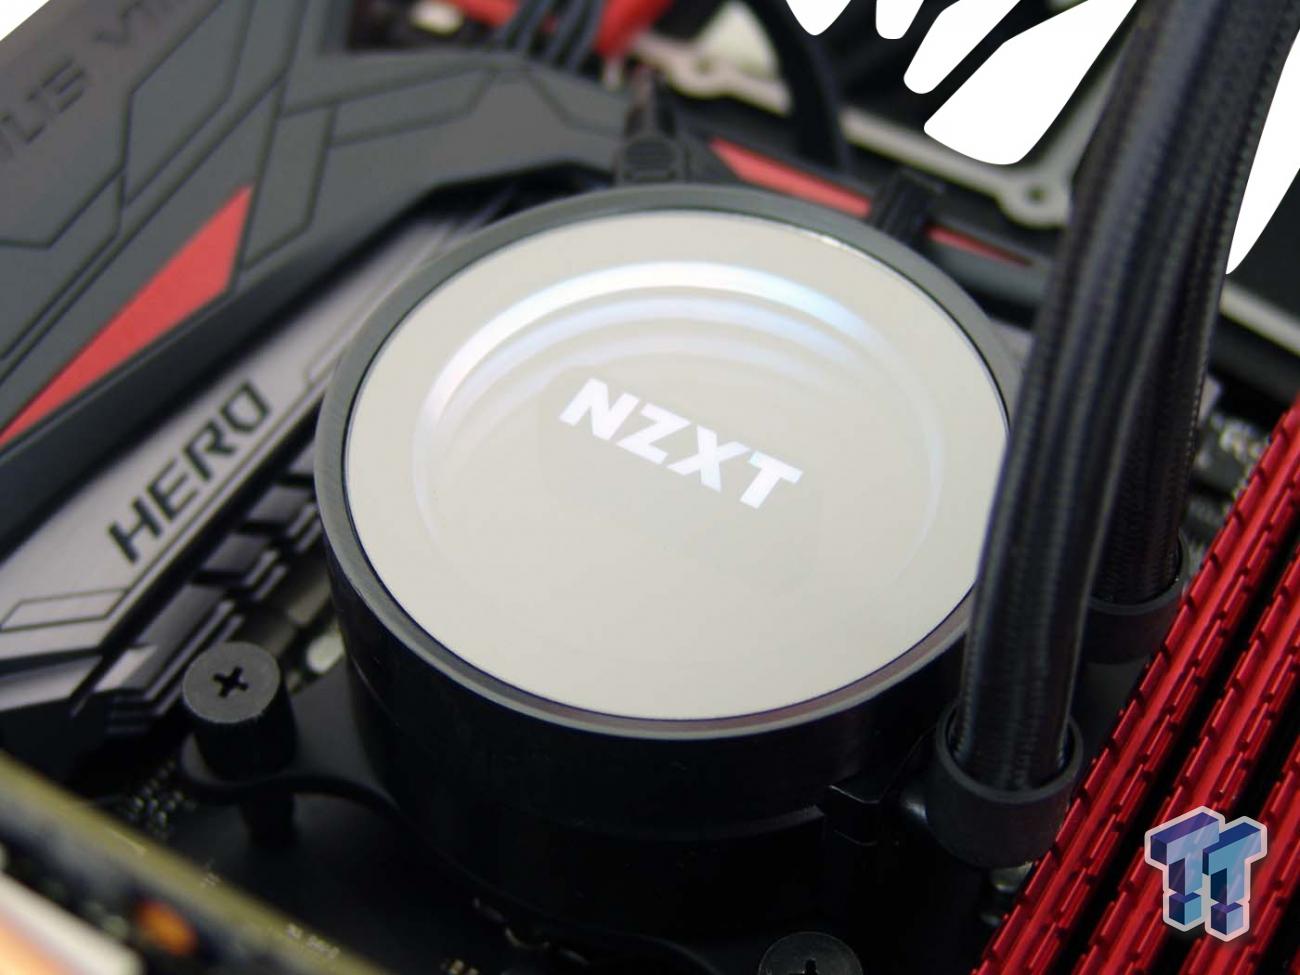 Nzxt Kraken X62 Liquid Cpu Cooler Review Tweaktown